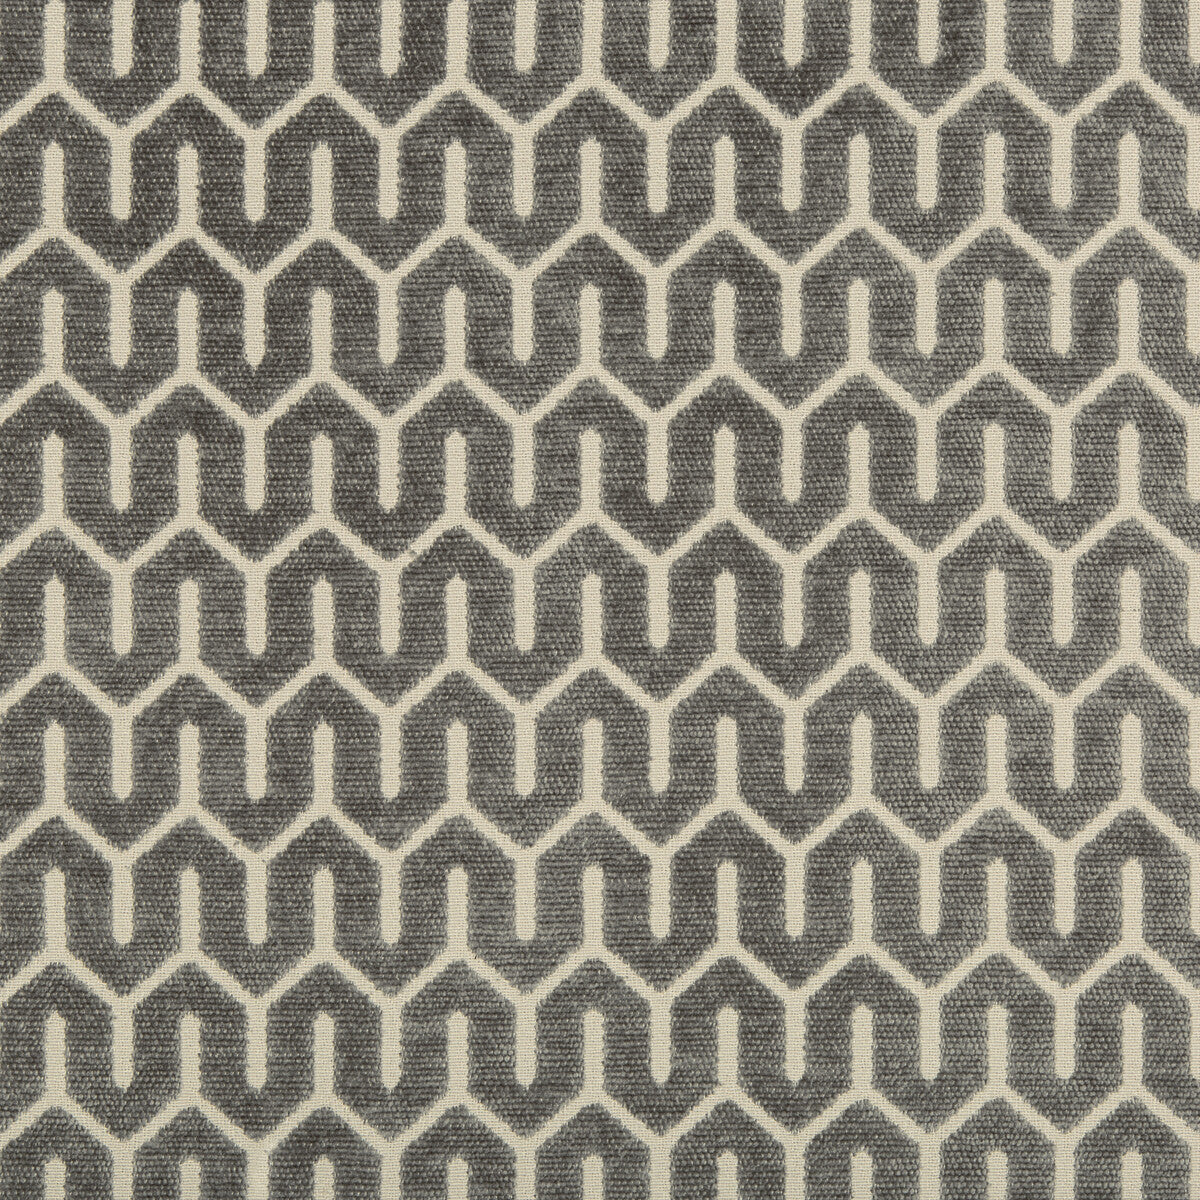 Kravet Design fabric in 35706-11 color - pattern 35706.11.0 - by Kravet Design